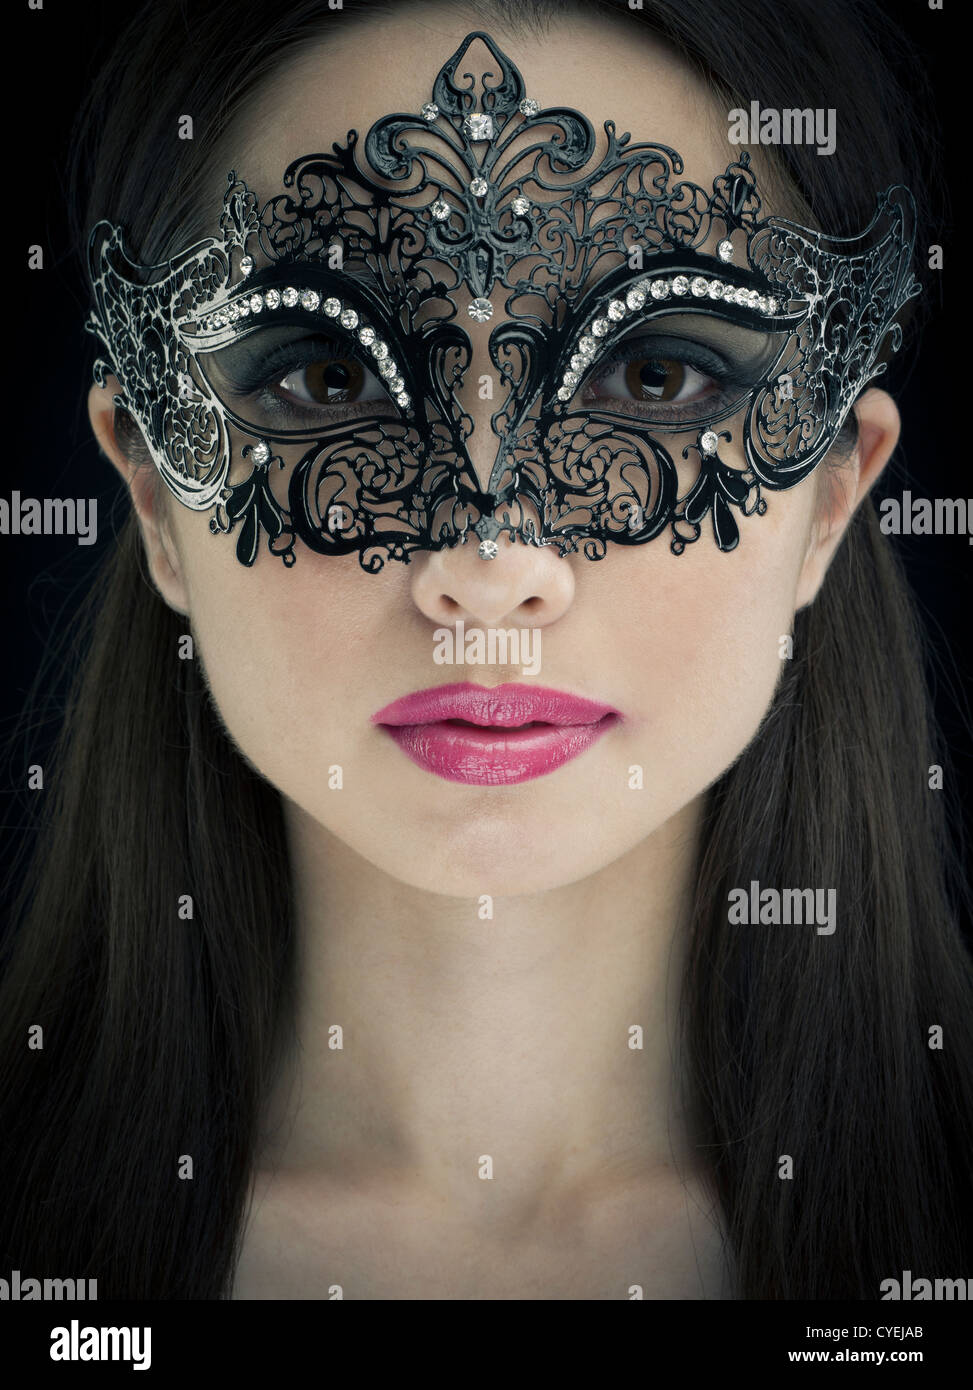 Máscara Veneciana Del Carnaval De La Mascarada De La Mujer Modelo De La  Belleza Que Lleva En El Partido Imagen de archivo - Imagen de persona,  traje: 132628377